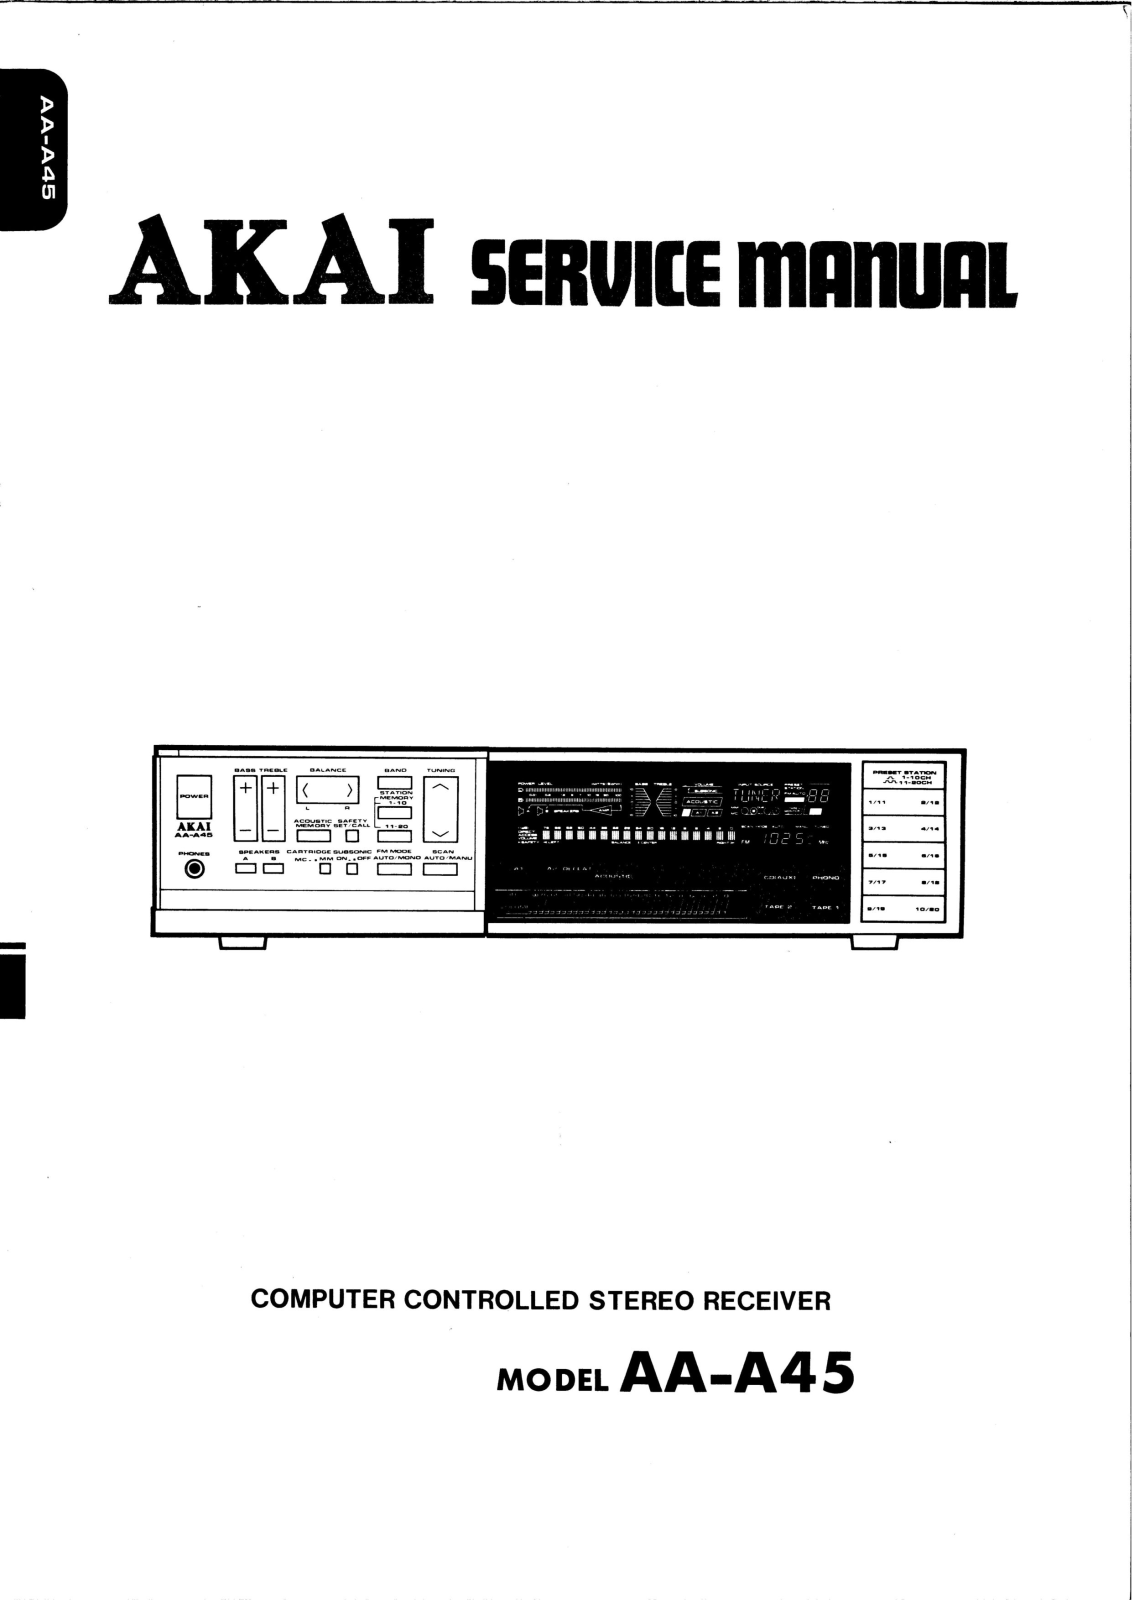 Akai AAA-45 Service manual